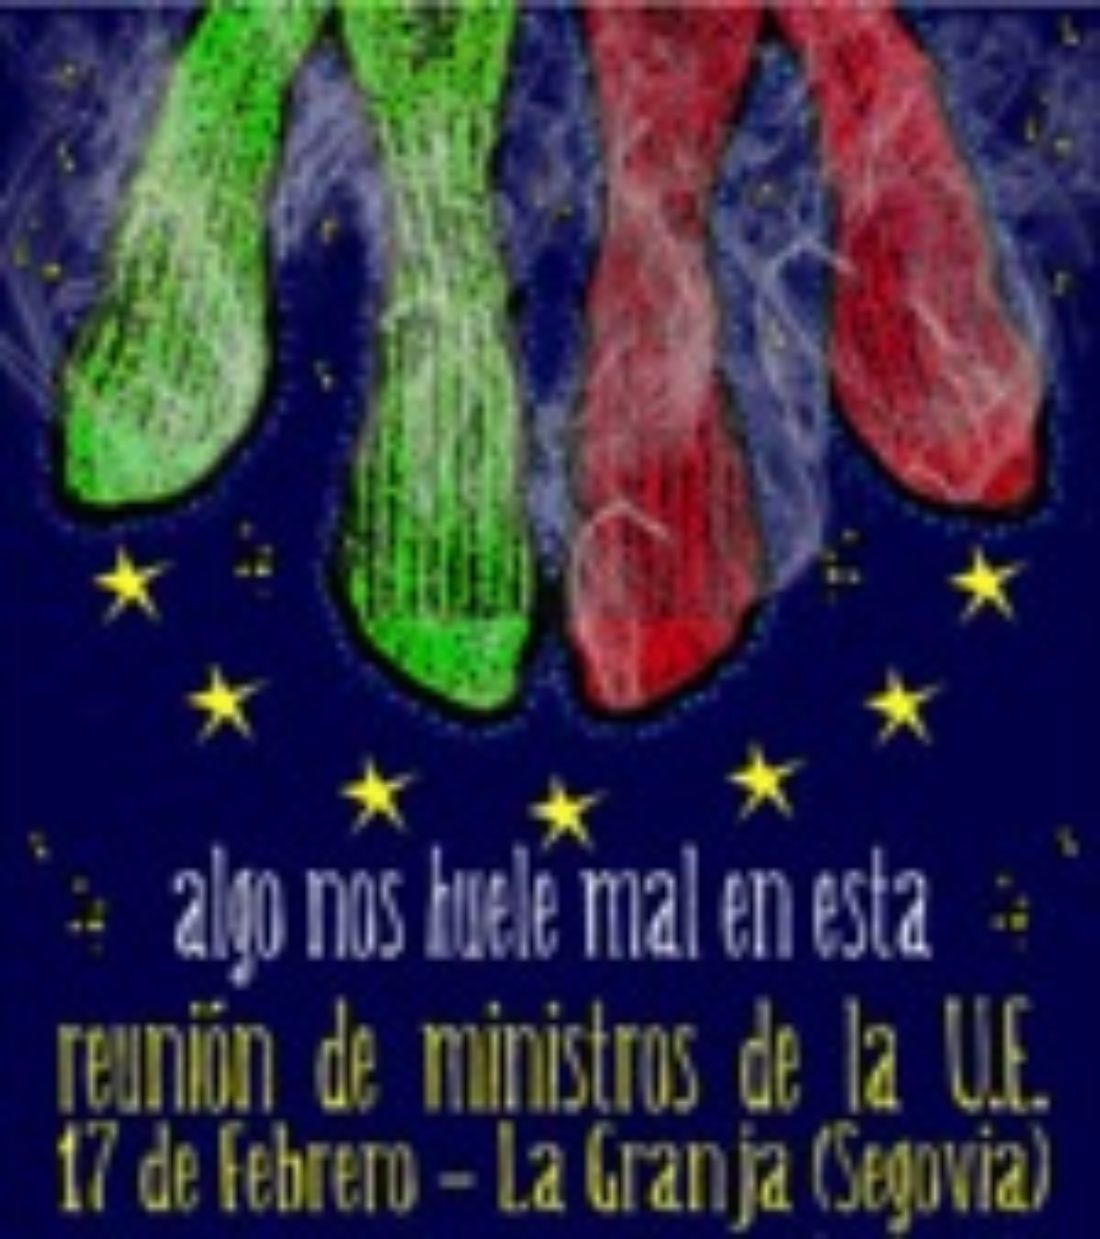 17 febrero, Segovia : Acto de CGT contra la reunión de Ministros de Desarrollo de la U.€.